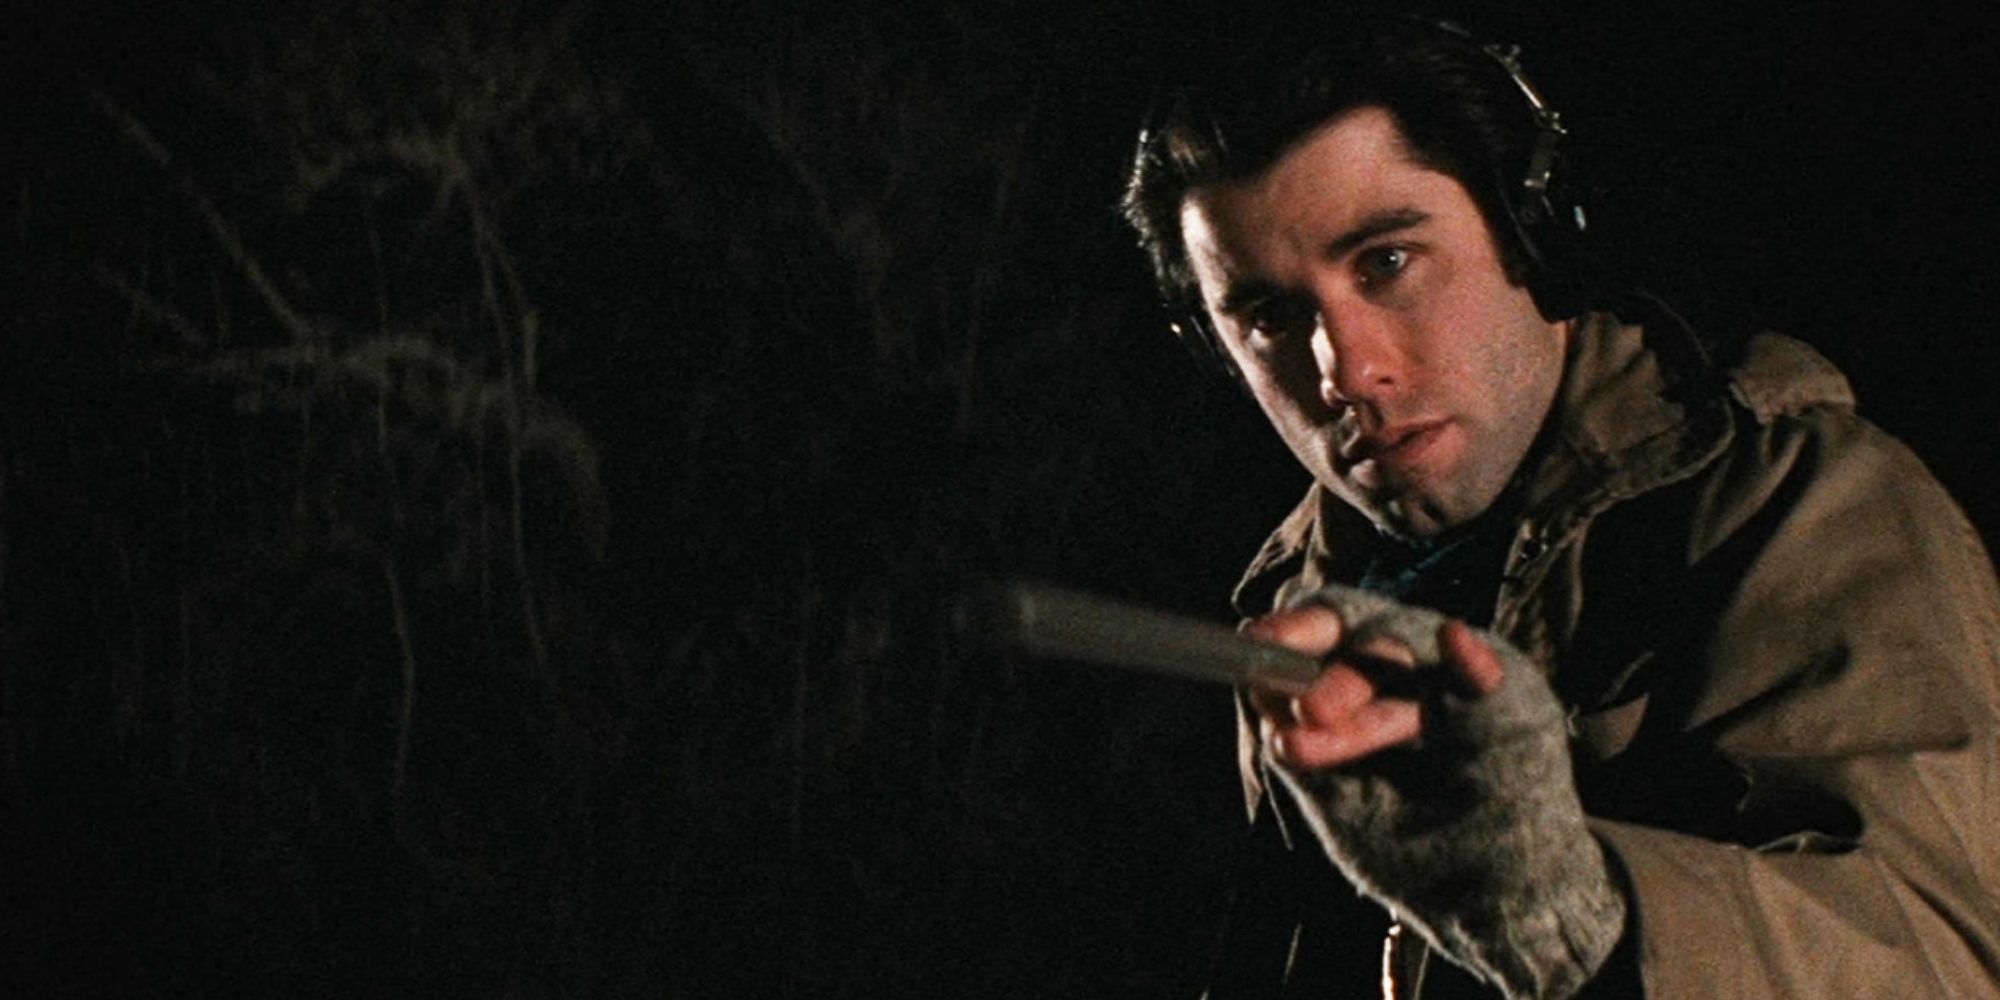 John Travolta como Jack Terry gravando som ambiental ao ar livre em uma noite fria